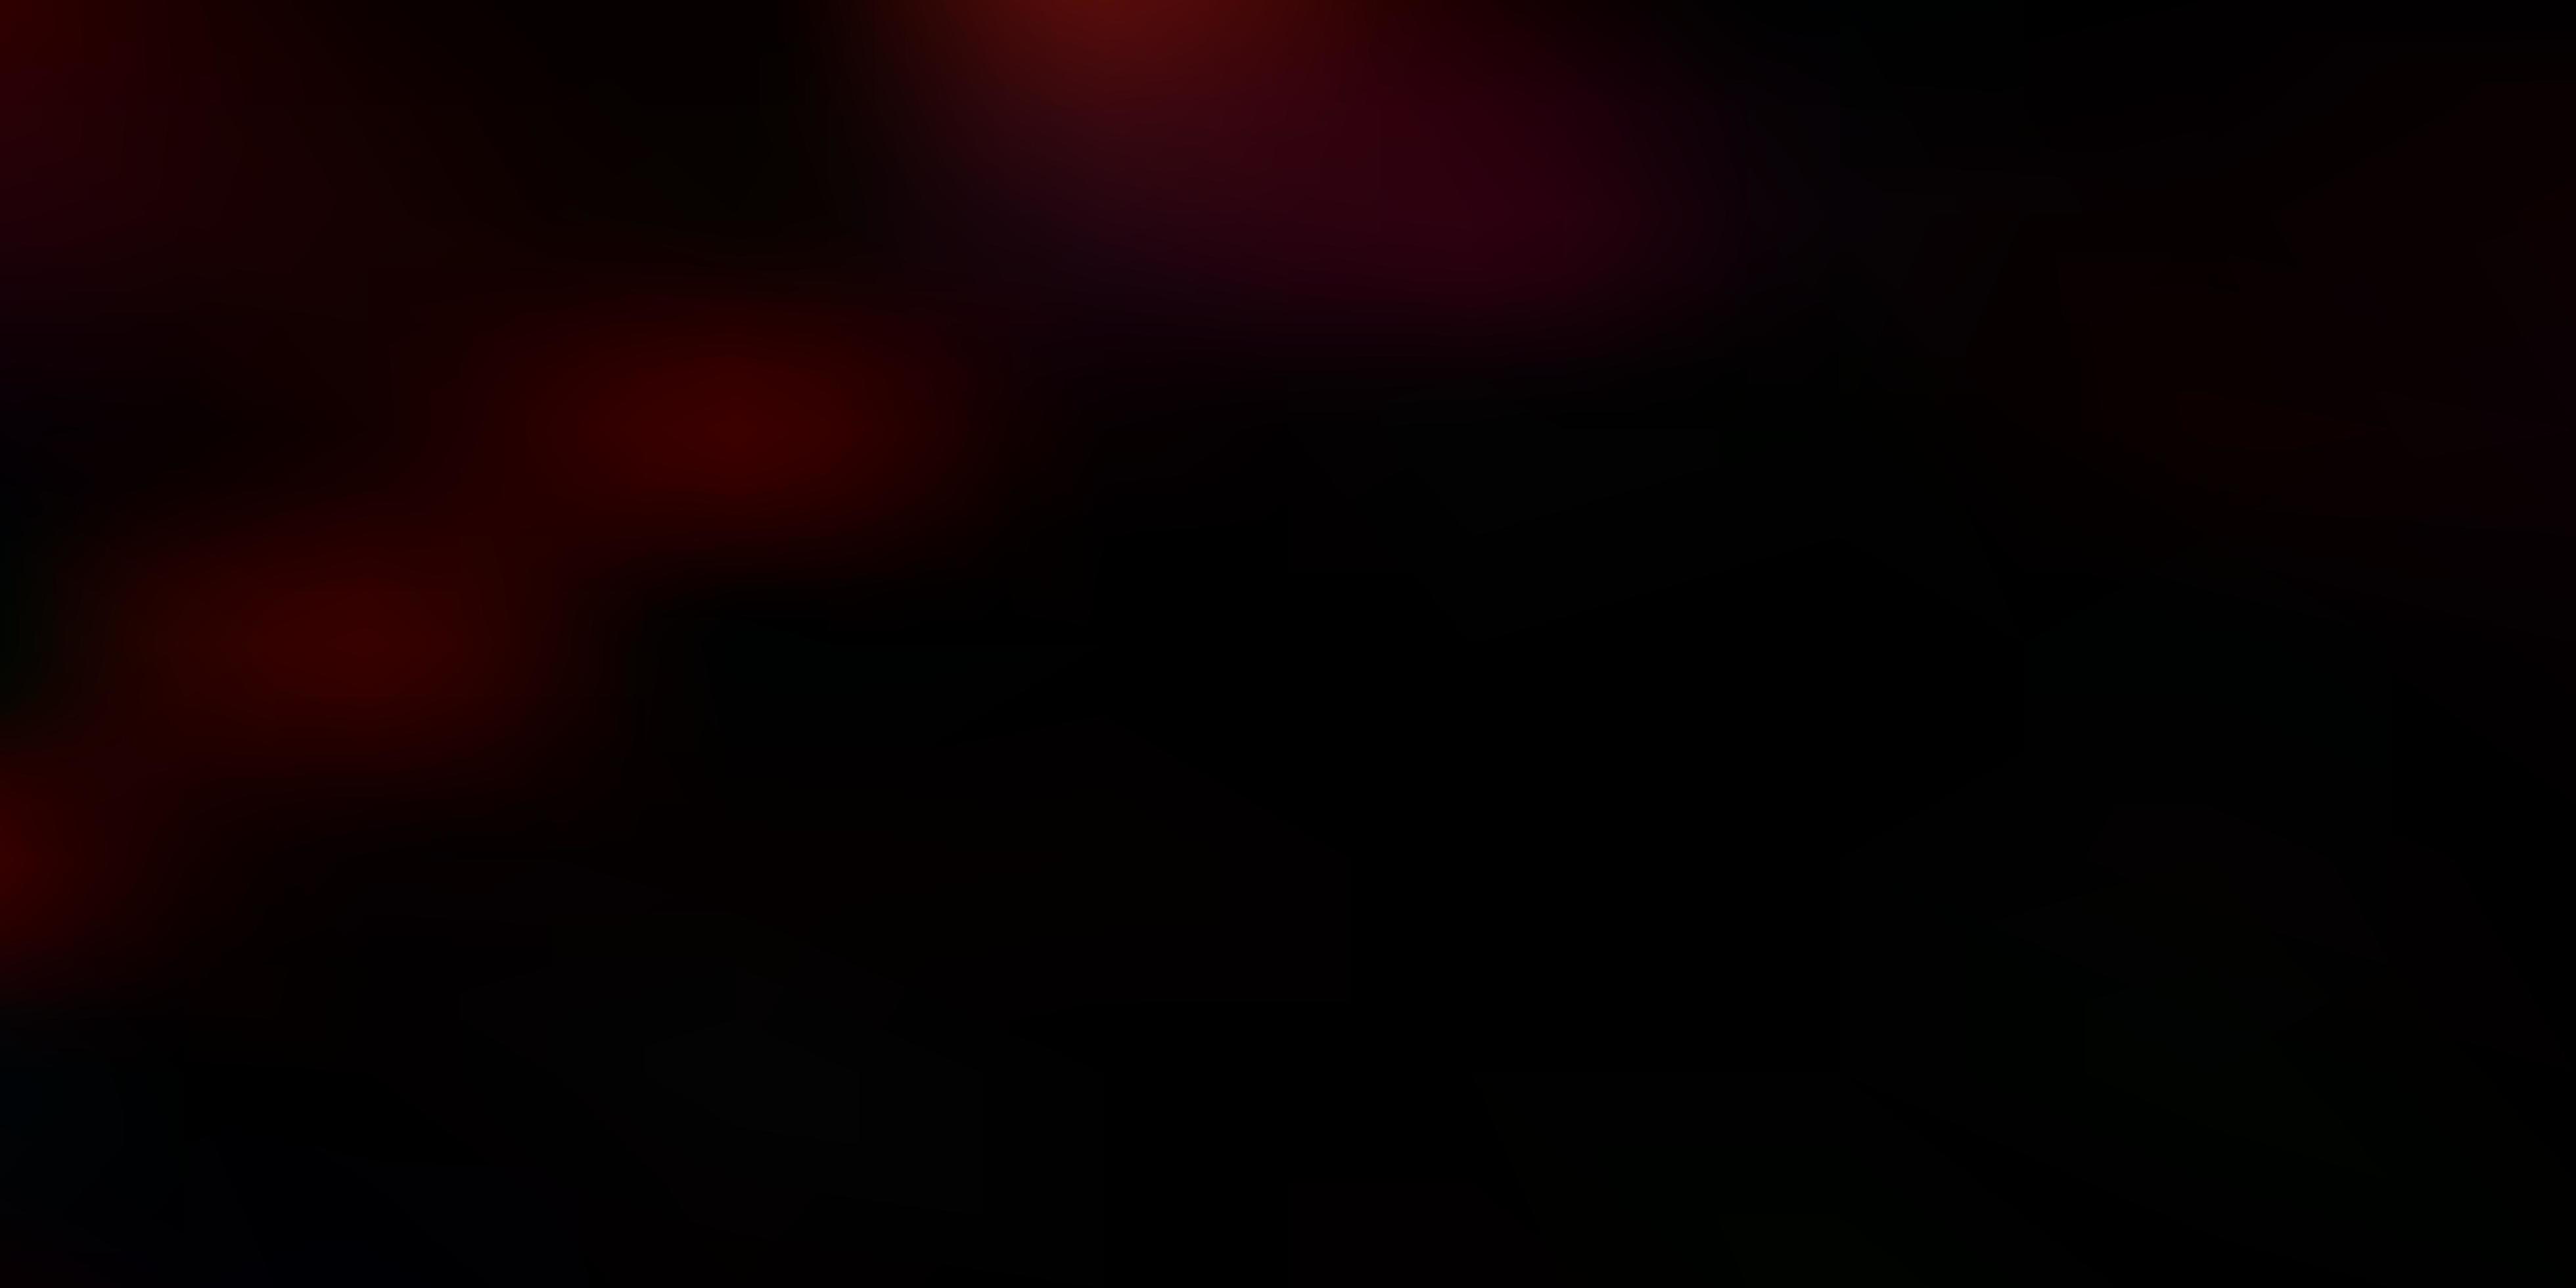 Dark Red Vector Blurred Backdrop 2798864 Vector Art At Vecteezy